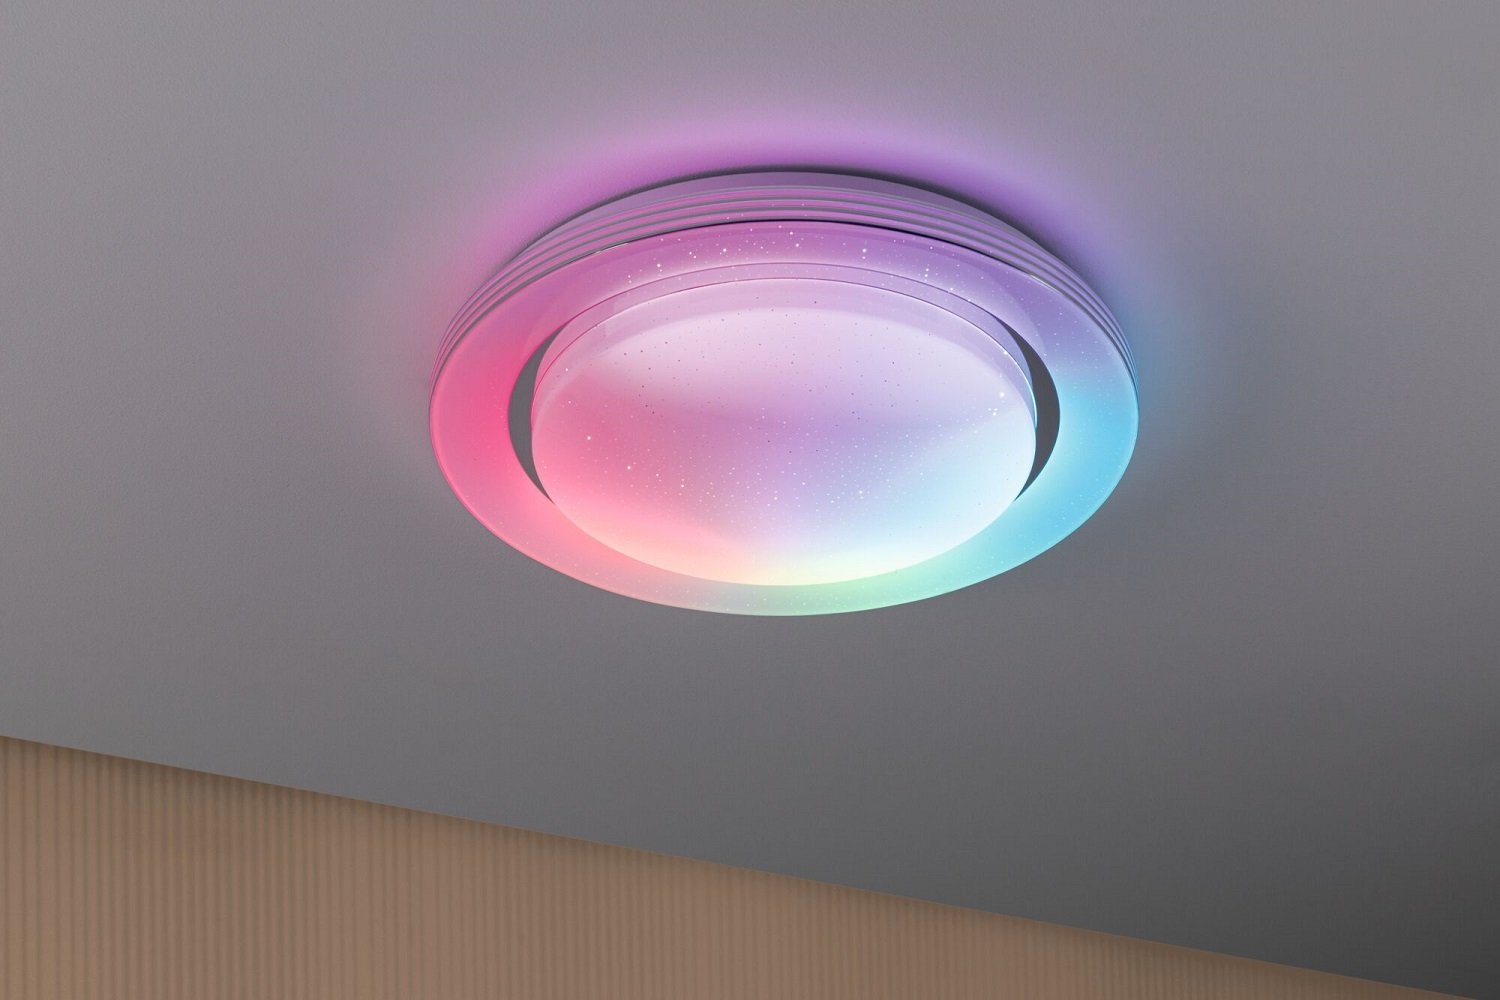 Regenbogeneffekt Rainbow im --> Lampen & online Leuchten Weiß LED Paulmann RGBW Chrom 70546 380mm kaufen Deckenleuchte